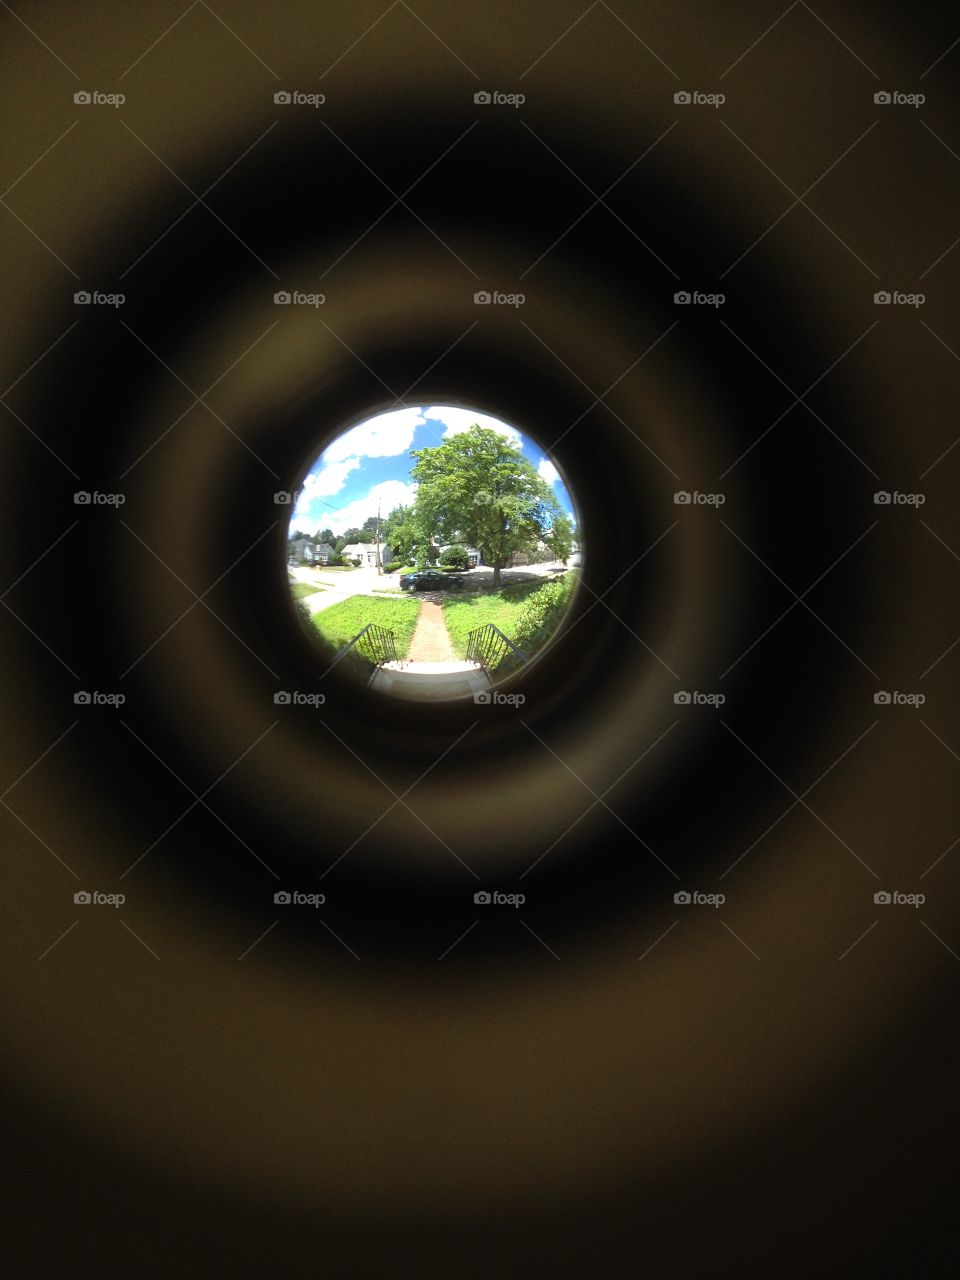 Sunny suburb through a peephole. 